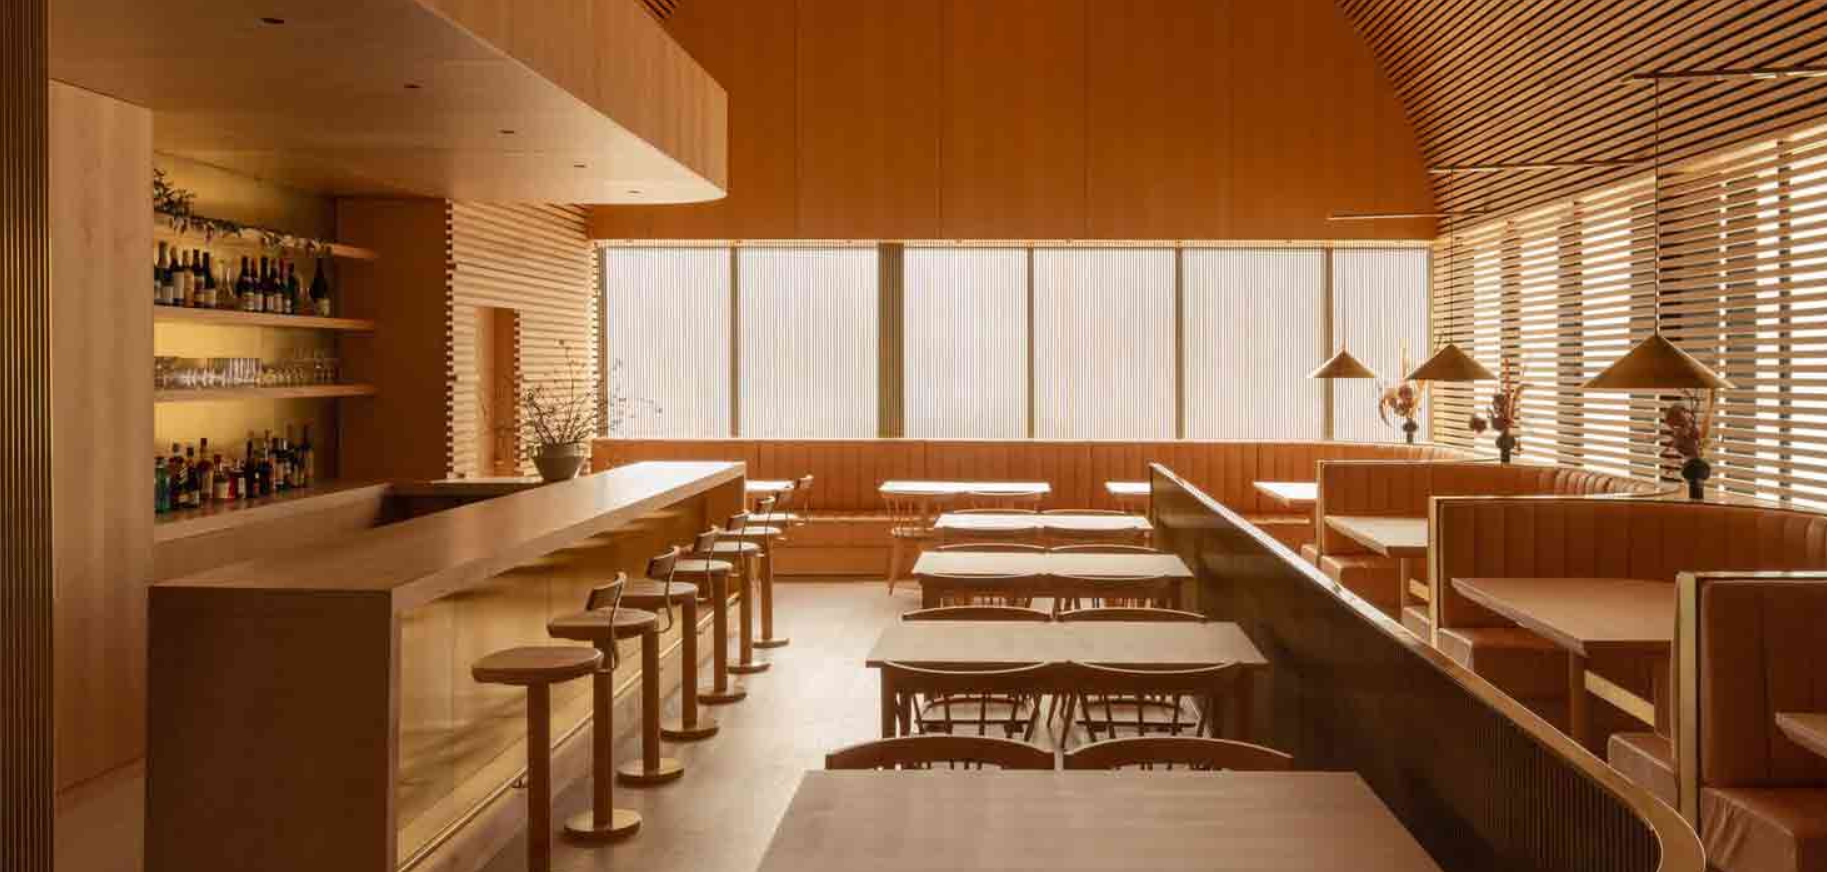 Arquitectos para restaurantes: Cómo el diseño arquitectónico cambia la gastronómica 3